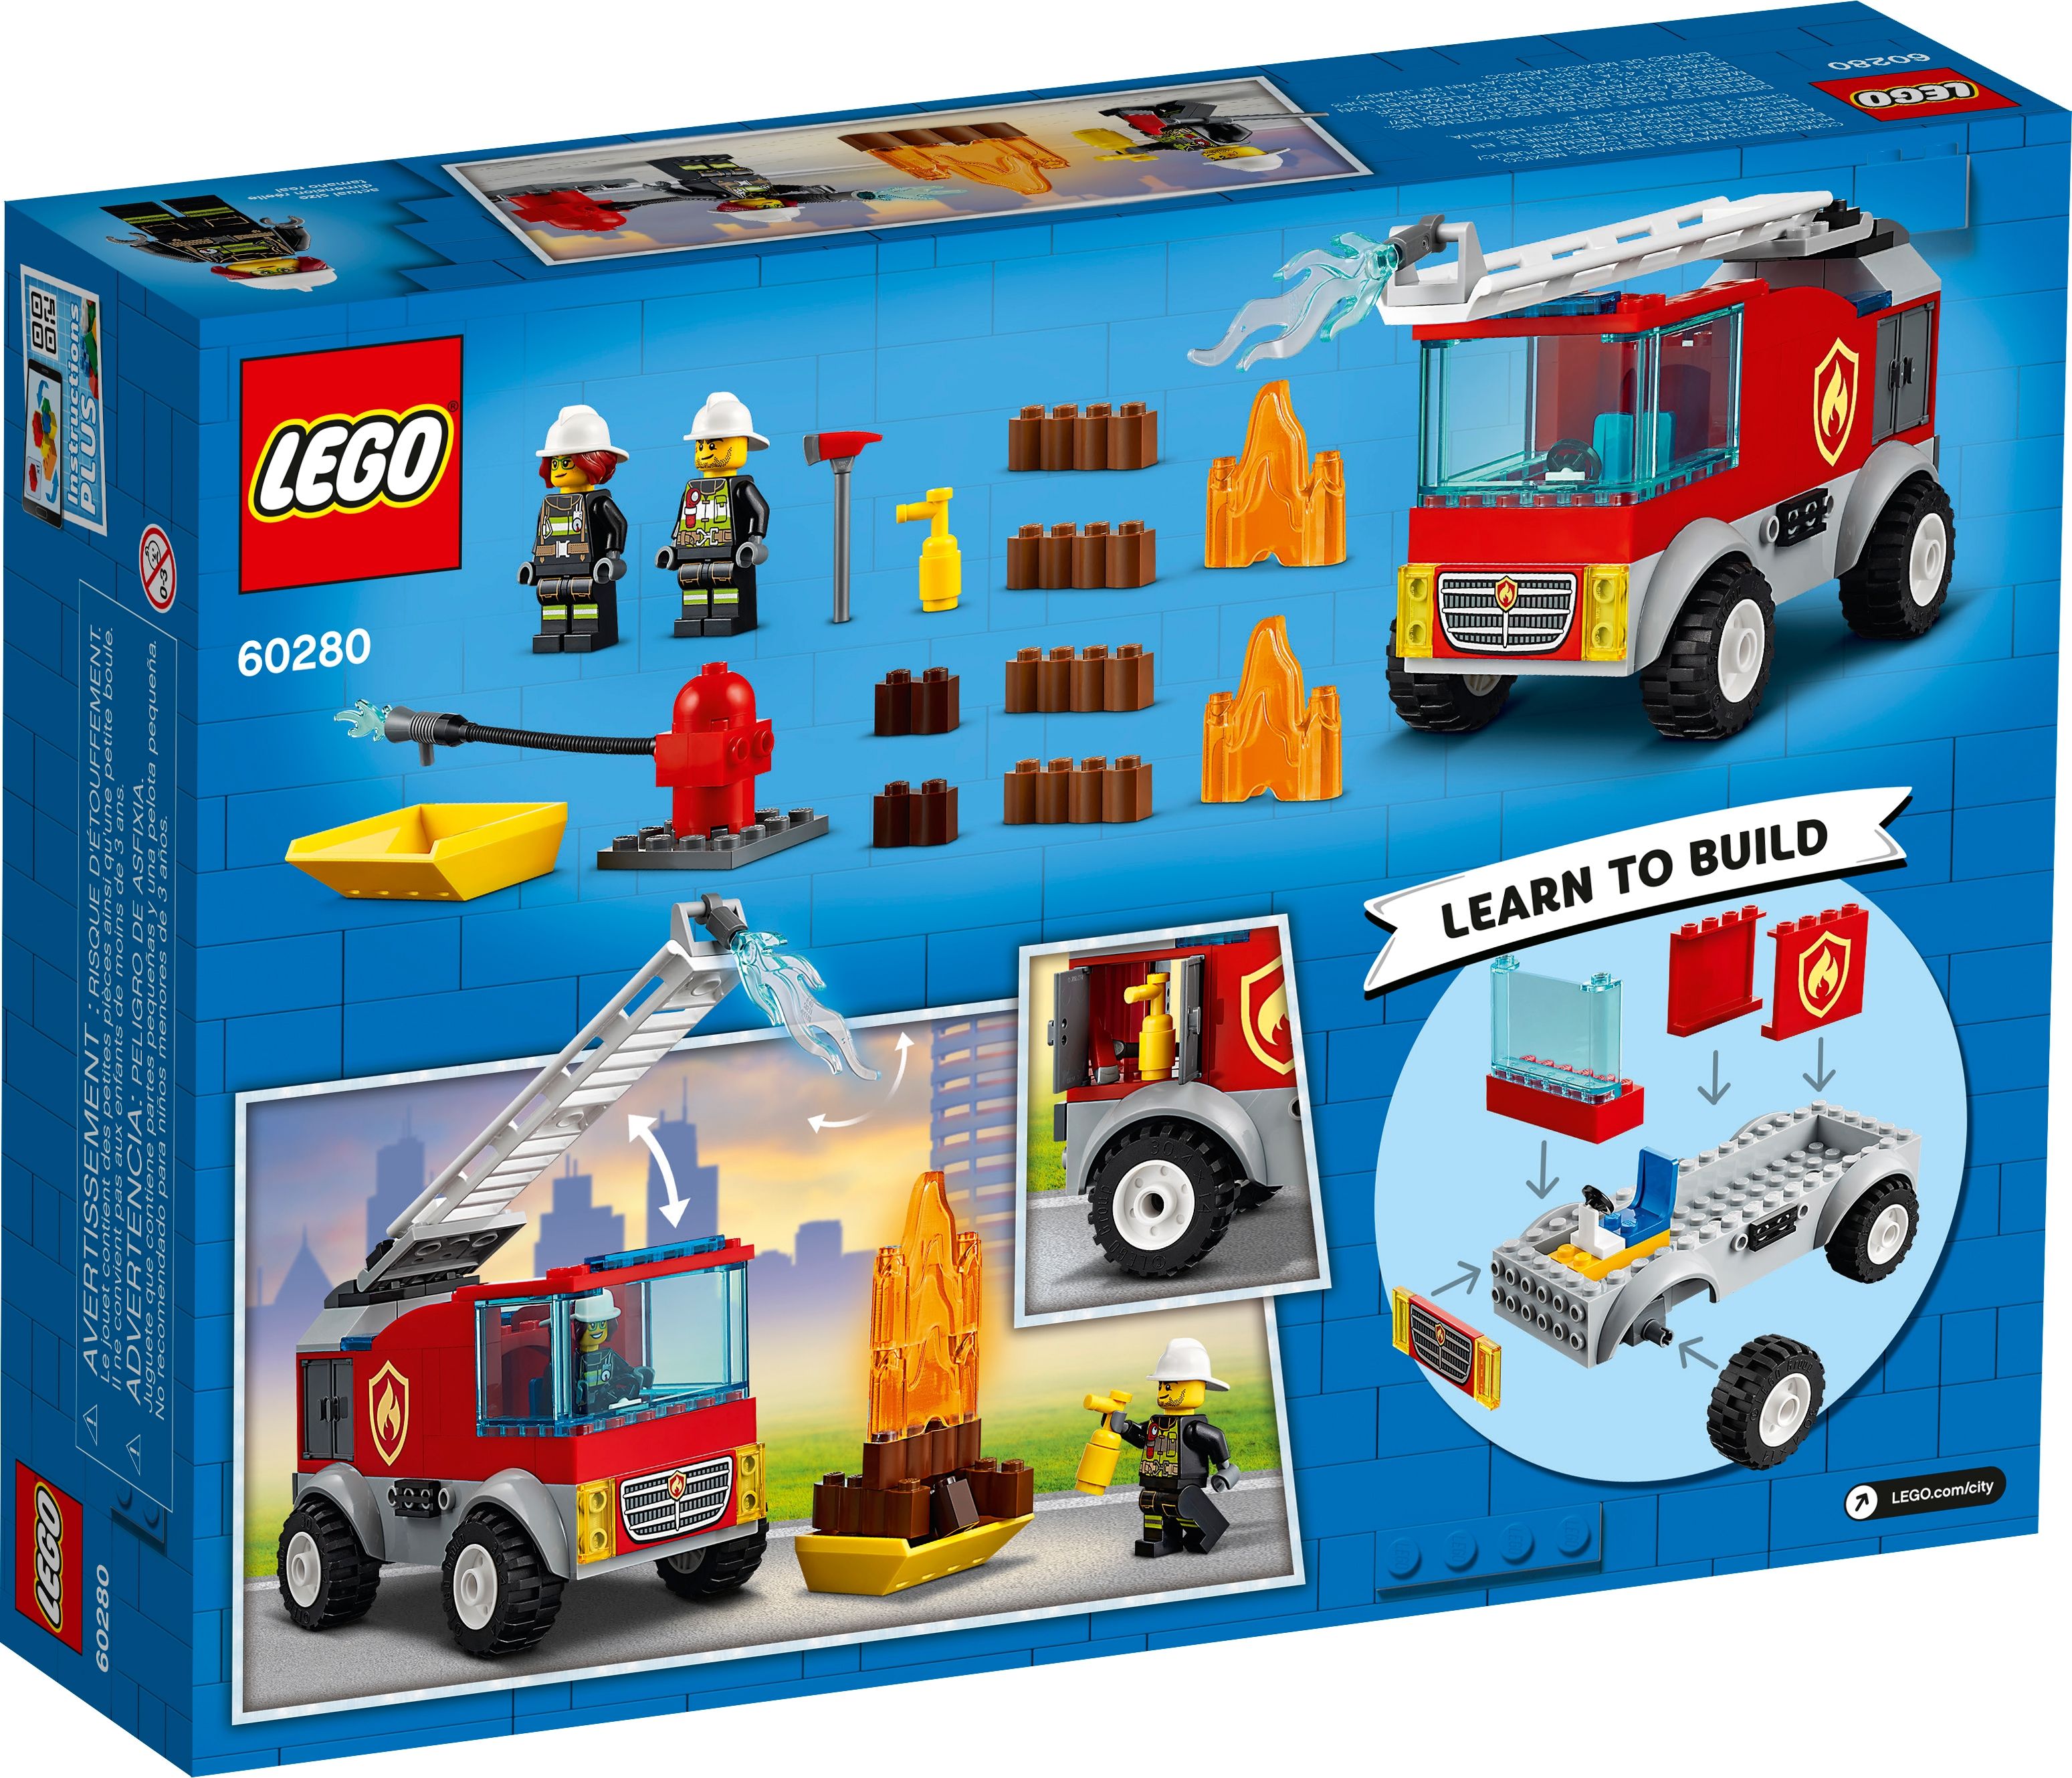 LEGO City 60280 Feuerwehrauto LEGO_60280_alt7.jpg